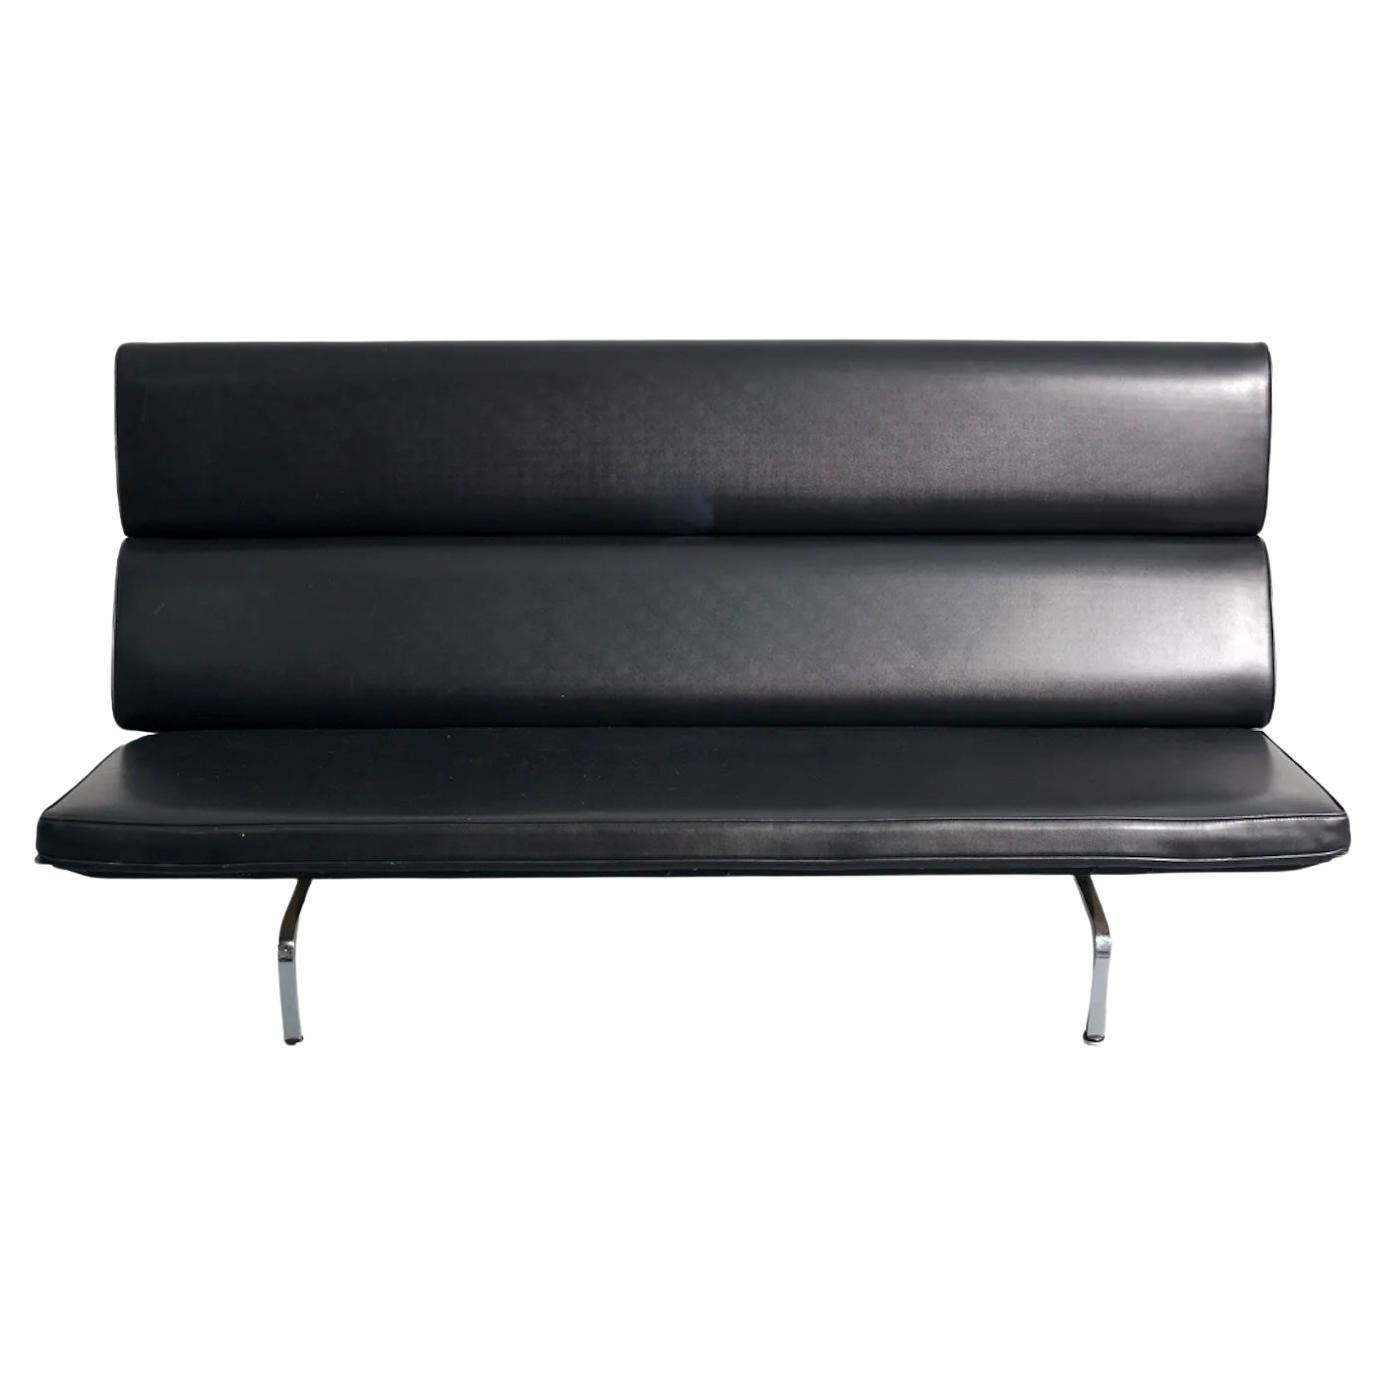 Original Eames-Sofa kompakt mit originaler schwarzer Lederpolsterung. Die kompakte Couch von Charles und Ray Eames ist ein großartiges Design, das ein subtiles Profil behält. Die gepolsterten Pads, die die Rückenlehne bilden, sind mit einer